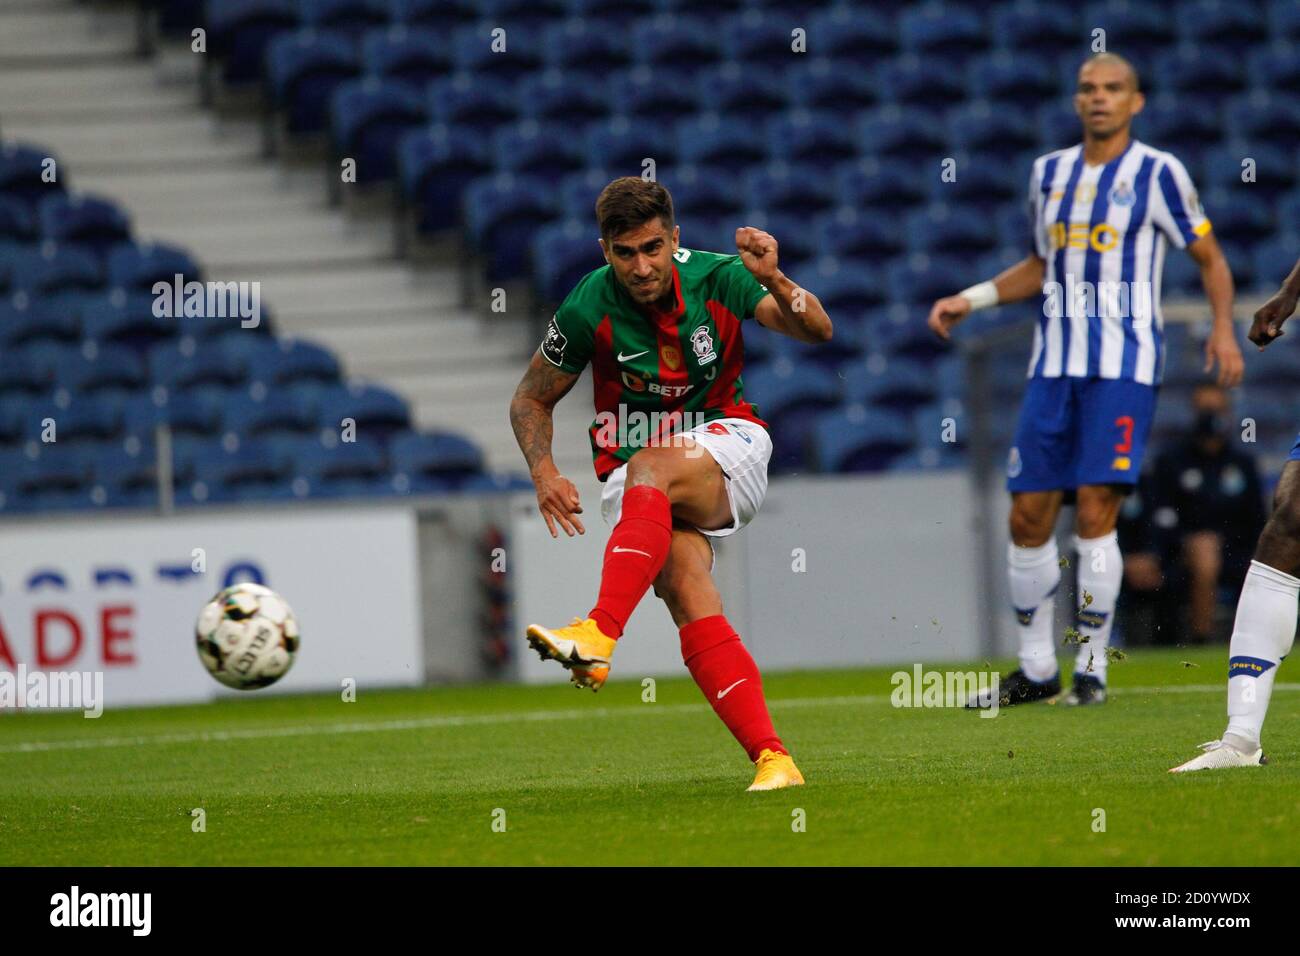 Rodrigo Pinho di Maritimo spara per segnare il suo gol durante il campionato portoghese, Liga NOS Football Match tra FC Porto e Maritimo in ottobre Foto Stock